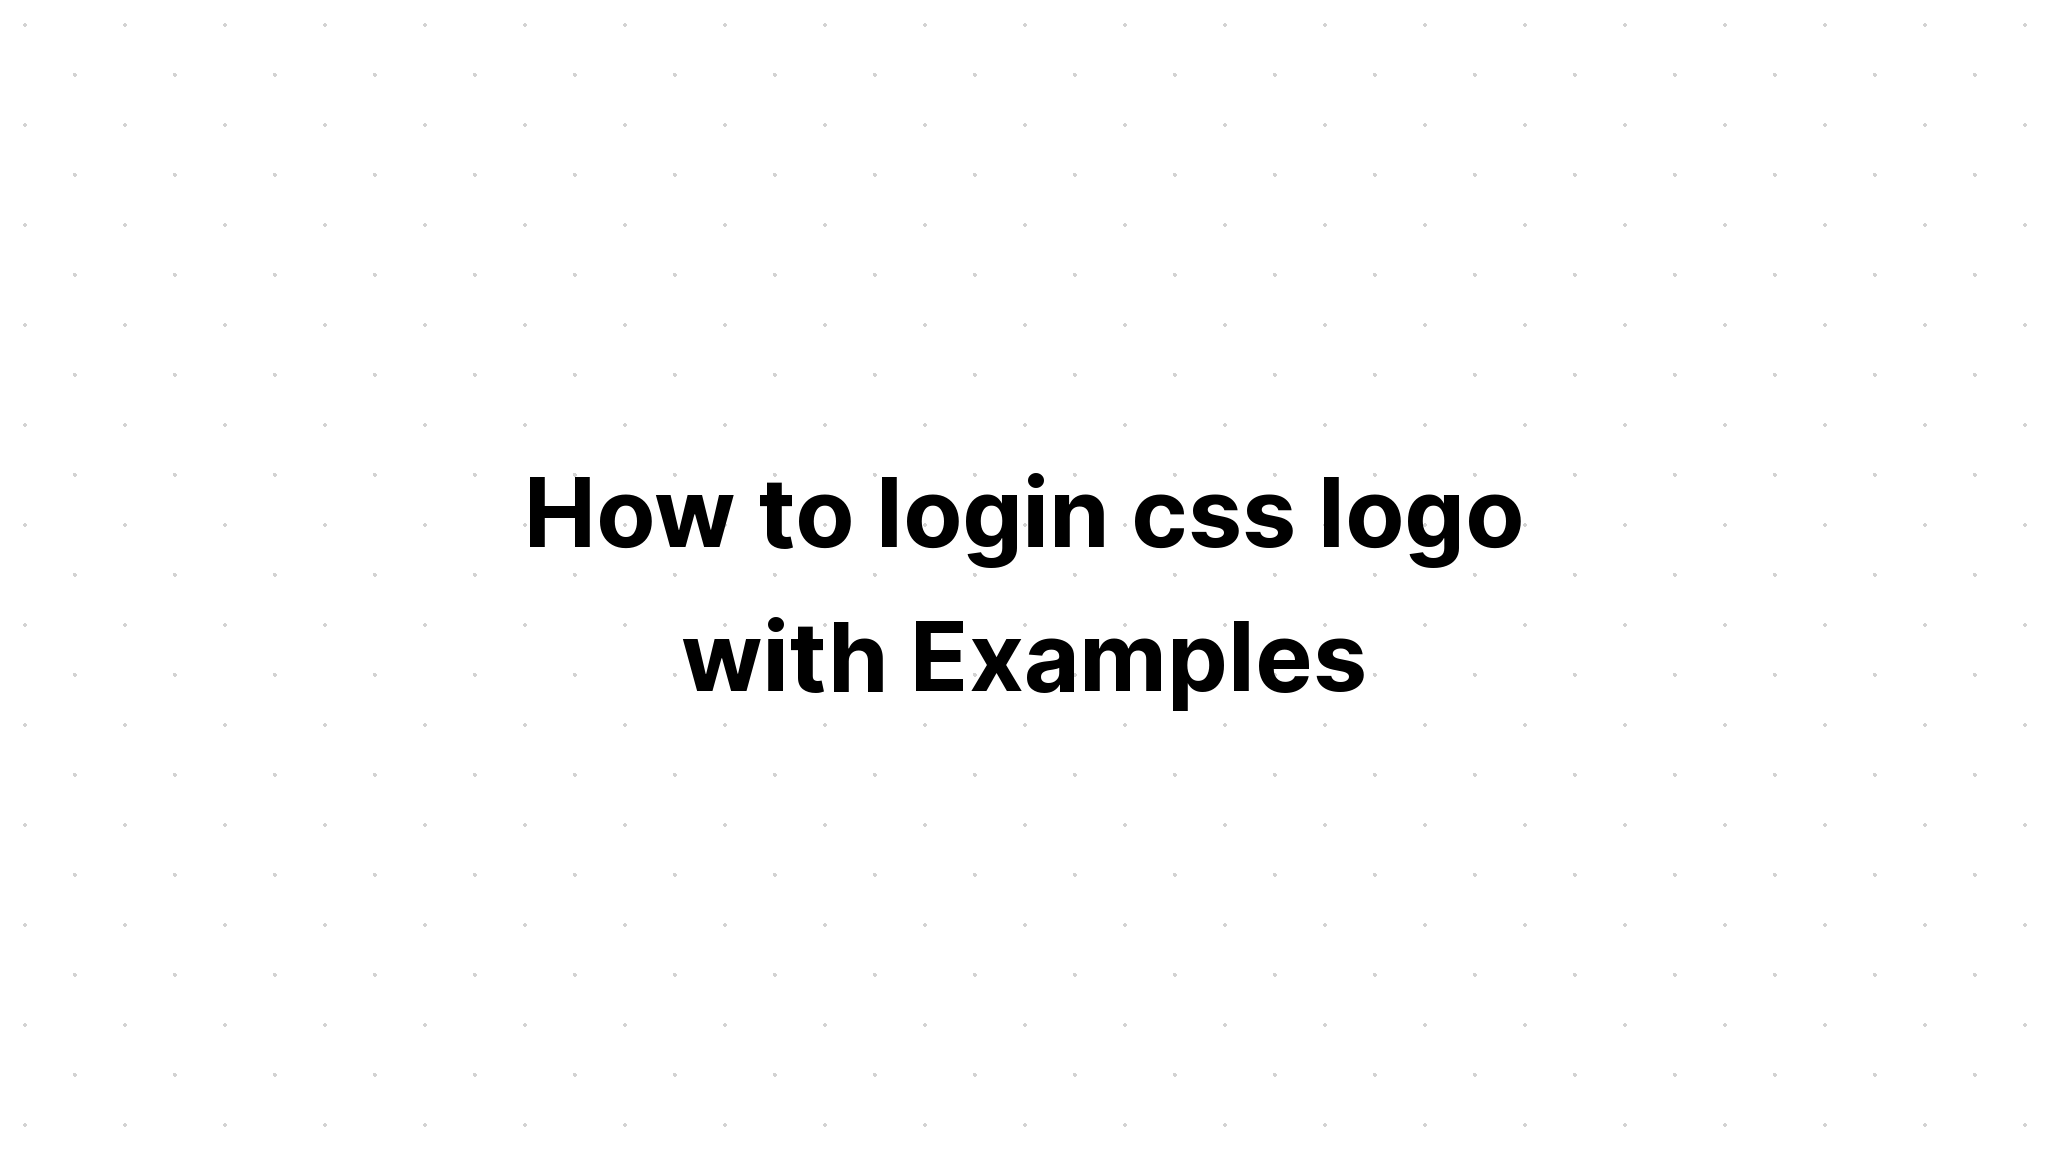 Cách đăng nhập logo css với Ví dụ